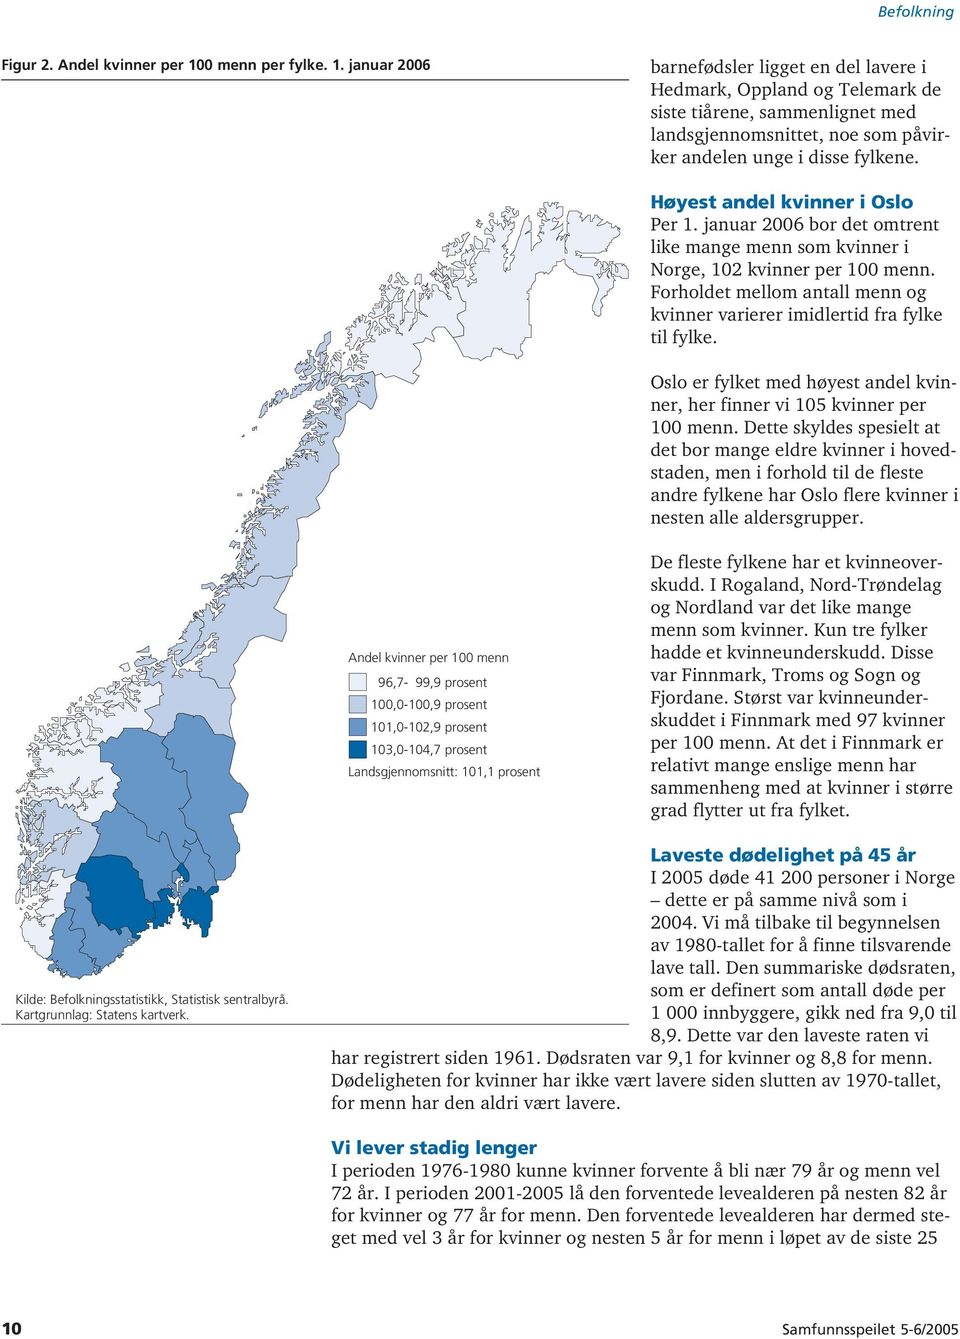 Høyest andel kvinner i Oslo Per 1. januar 2006 bor det omtrent like mange menn som kvinner i Norge, 102 kvinner per 100 menn.